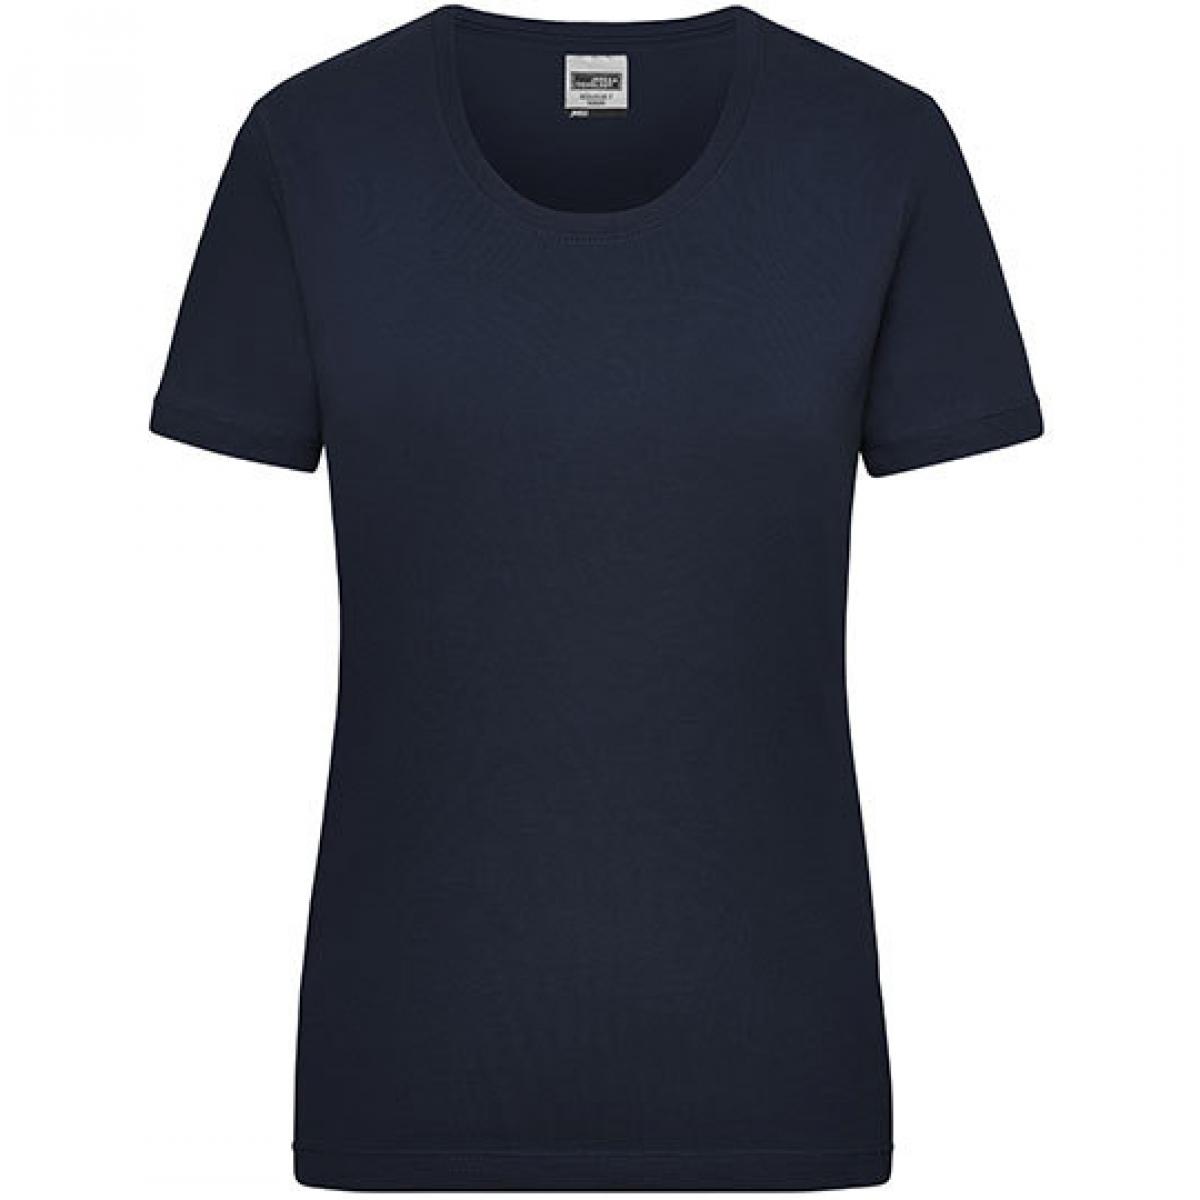 Hersteller: James+Nicholson Herstellernummer: JN 802 Artikelbezeichnung: Workwear-T Women Damen T-Shirt Farbe: Navy